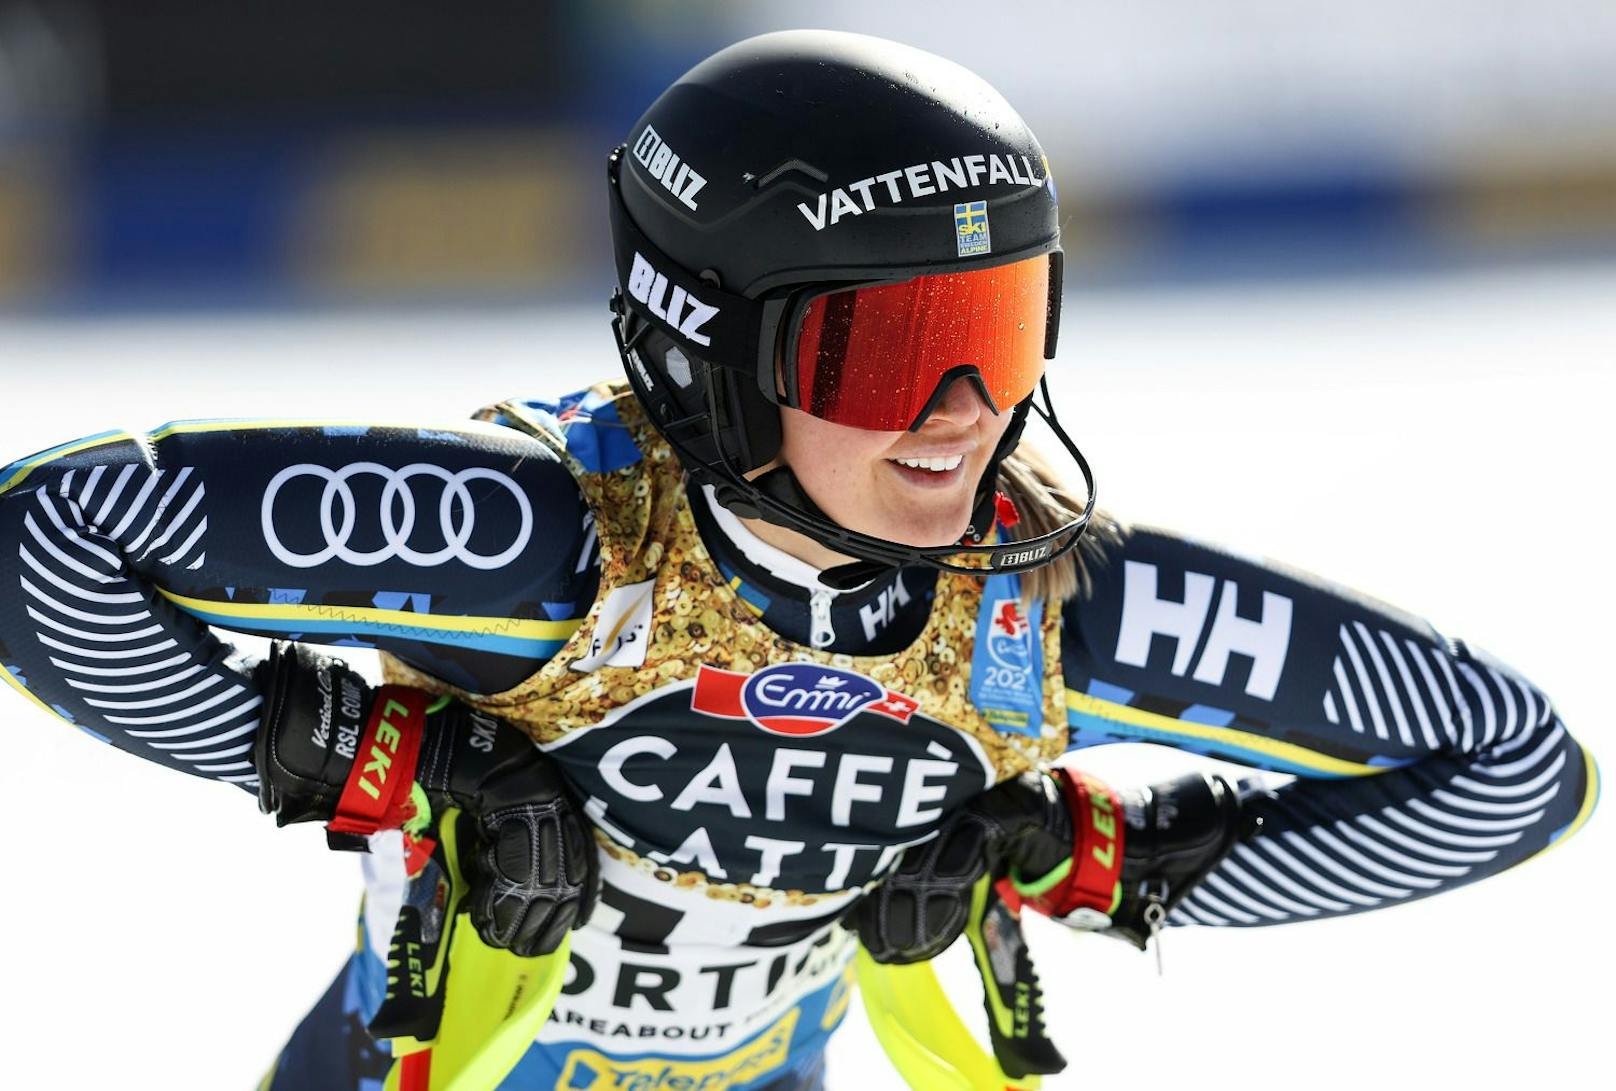 Emelie Wikström nimmt mit 29 Jahren den Hut. Sie gibt mentale Probleme als Grund an. Ihre Erfolge: Platz sechs im Olympia-Slalom 2014. Zehn Top-Ten-Platzierungen im Weltcup, zwei Weltcupsiege im Mannschaftsbewerb mit Schweden.